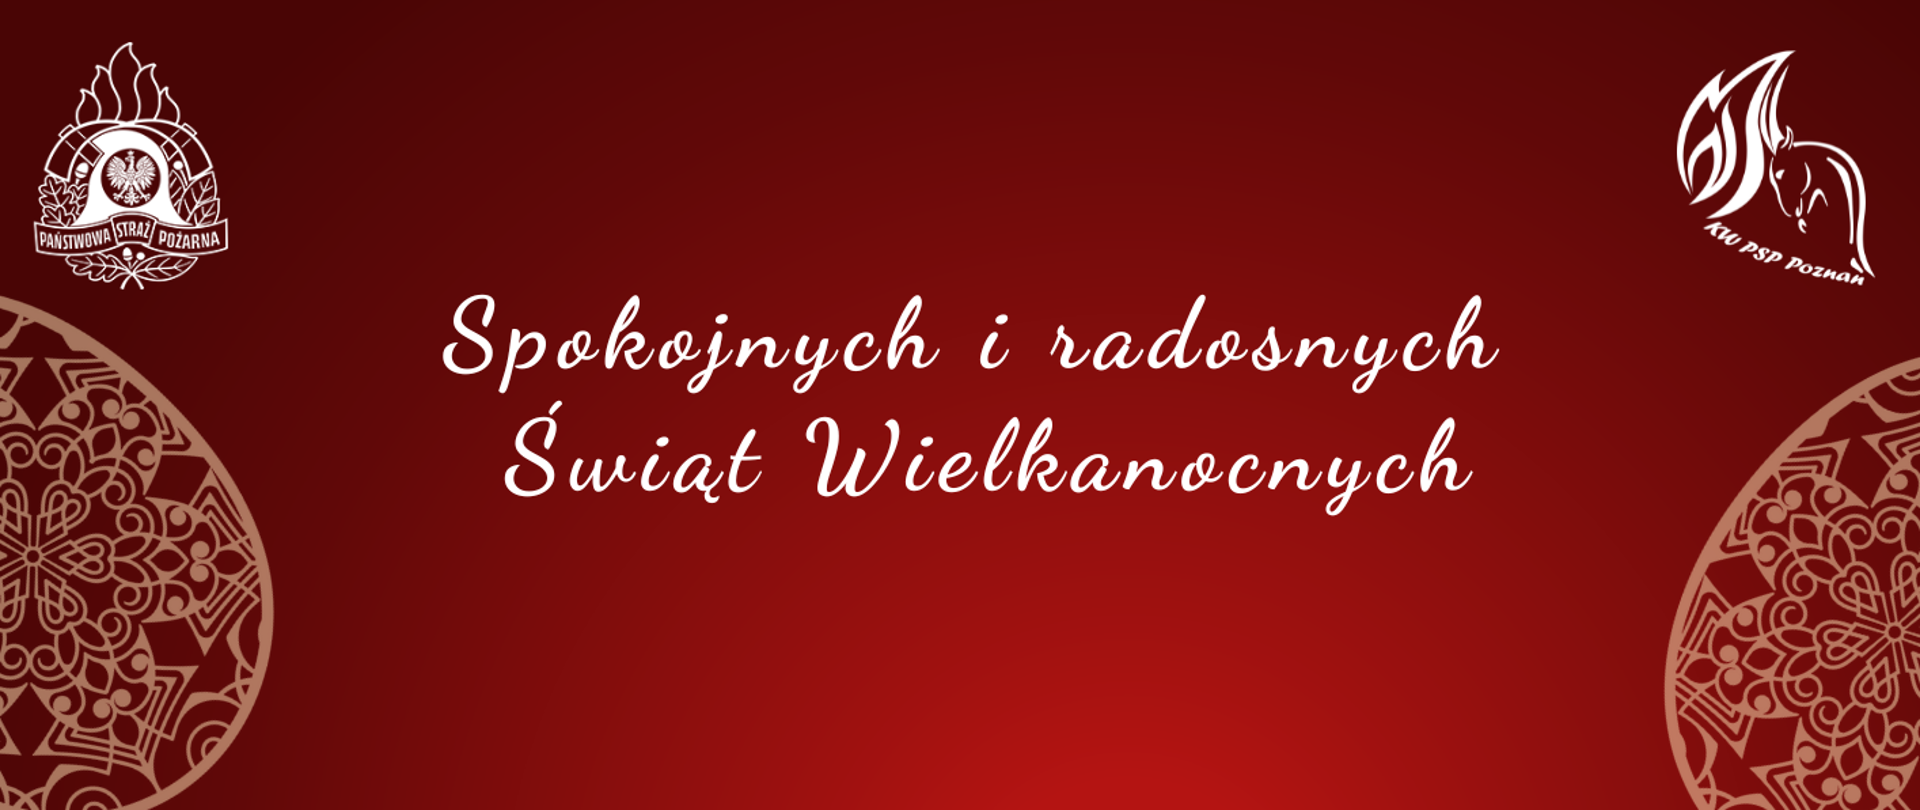 Życzenia Wielkopolskiego Komendanta Wojewódzkiego PSP z okazji świąt Wielkanocnych